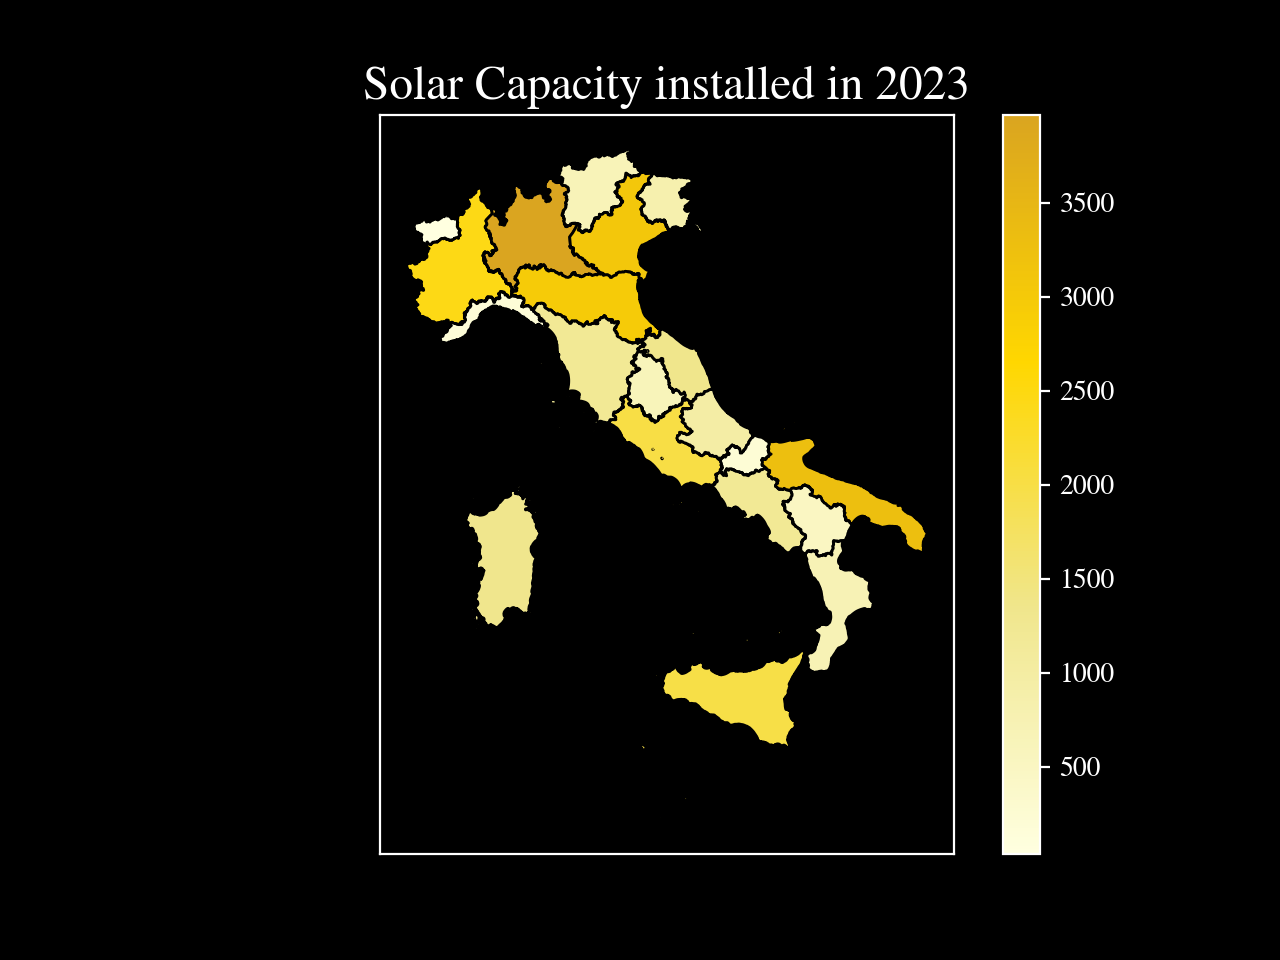 solar-capacity